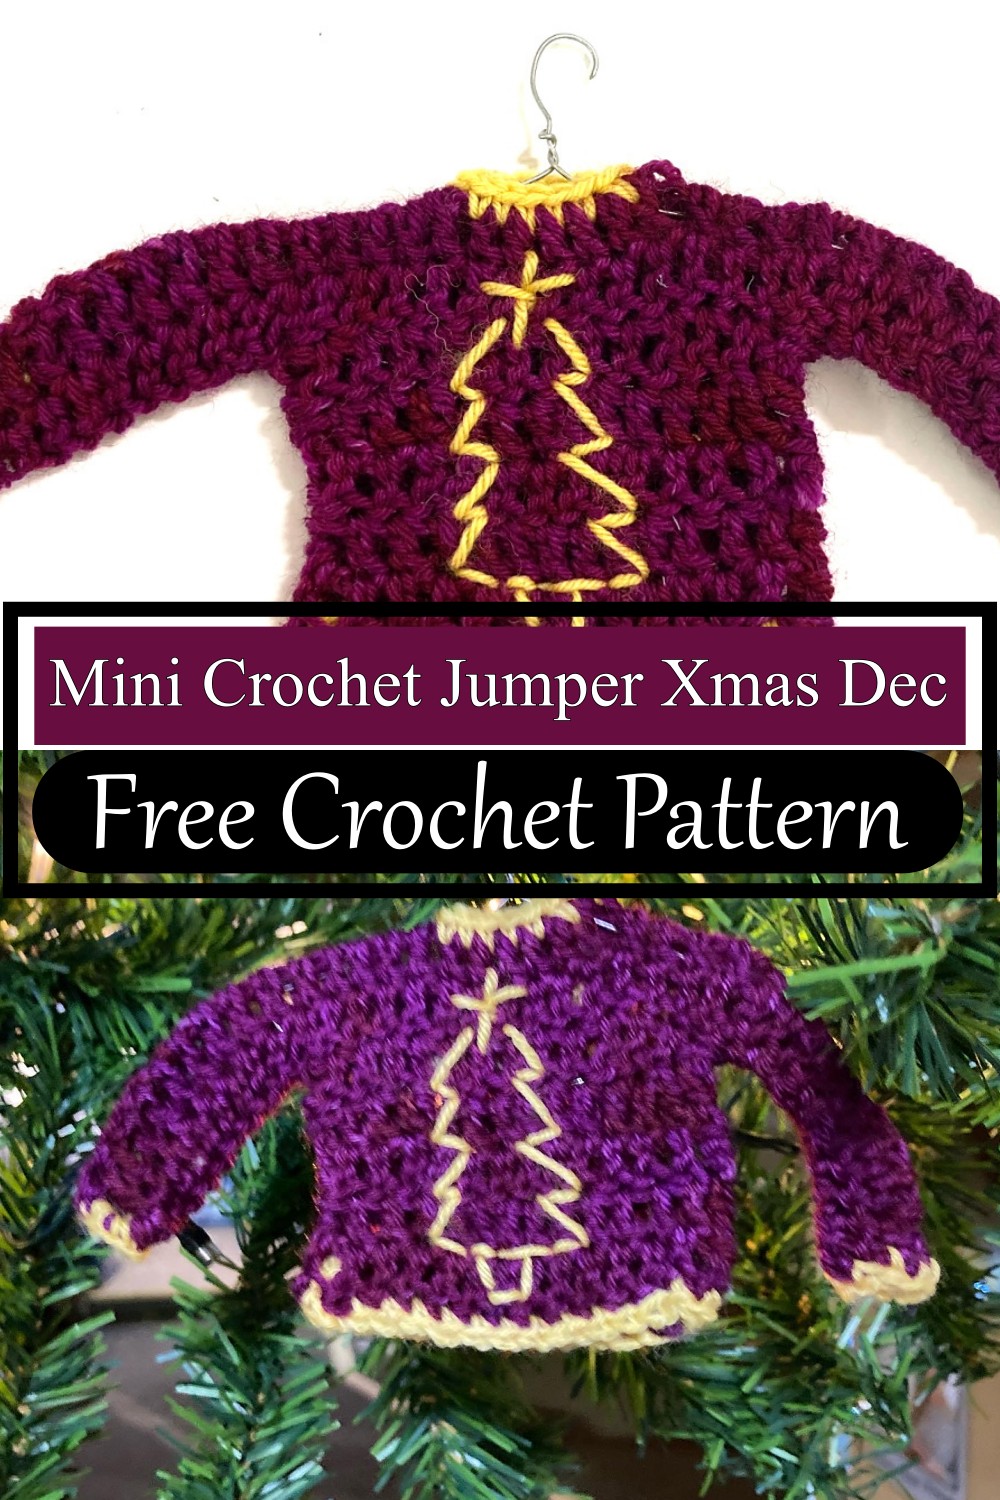 Mini Crochet Jumper Xmas Dec